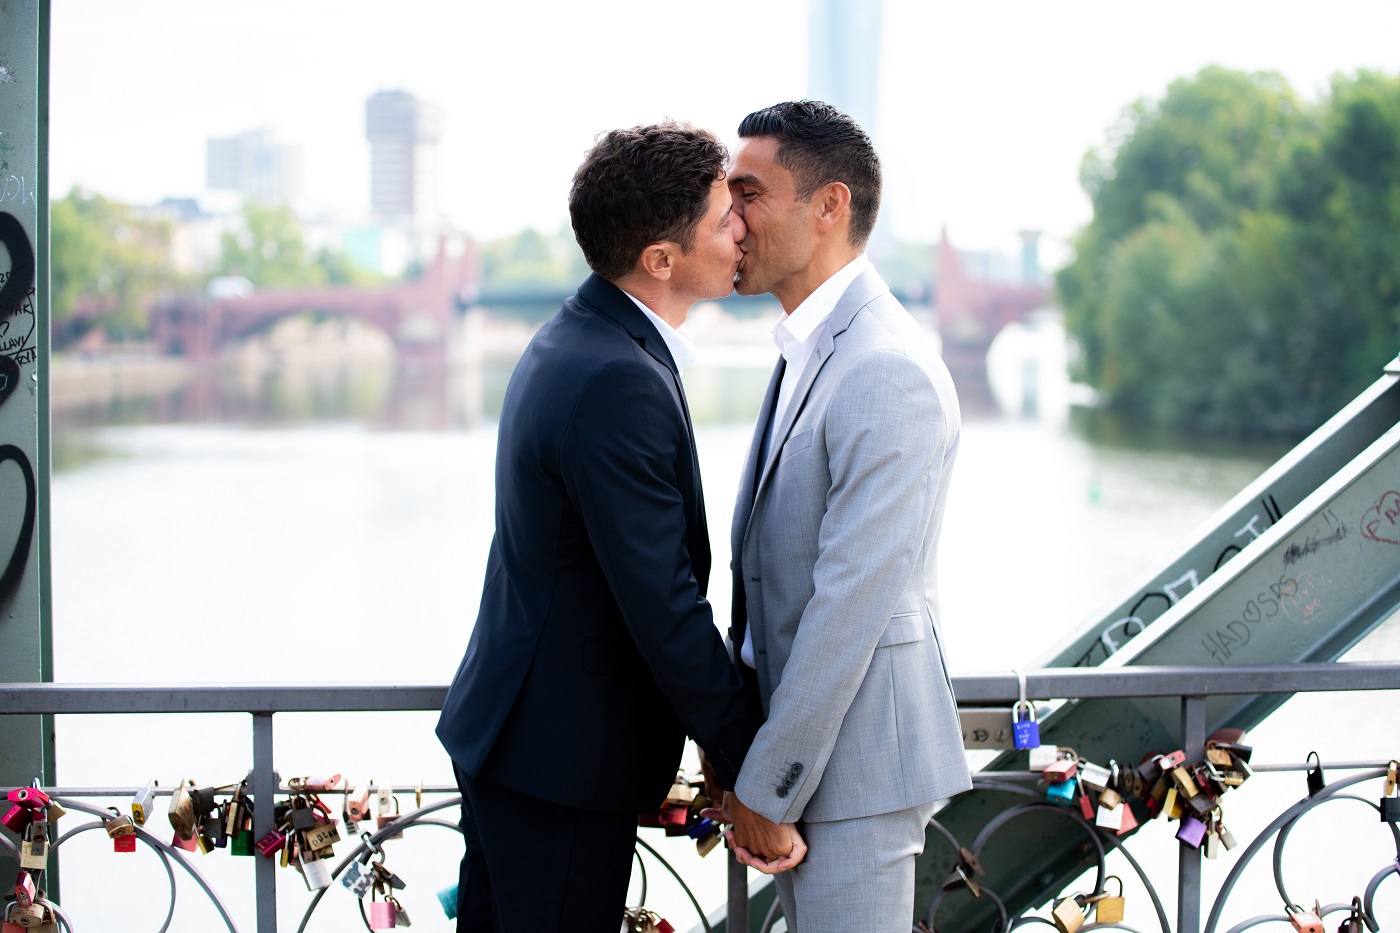 Hochzeitsfotograf auf dem Eisernen Steg in Frankfurt bei Männerhochzeit